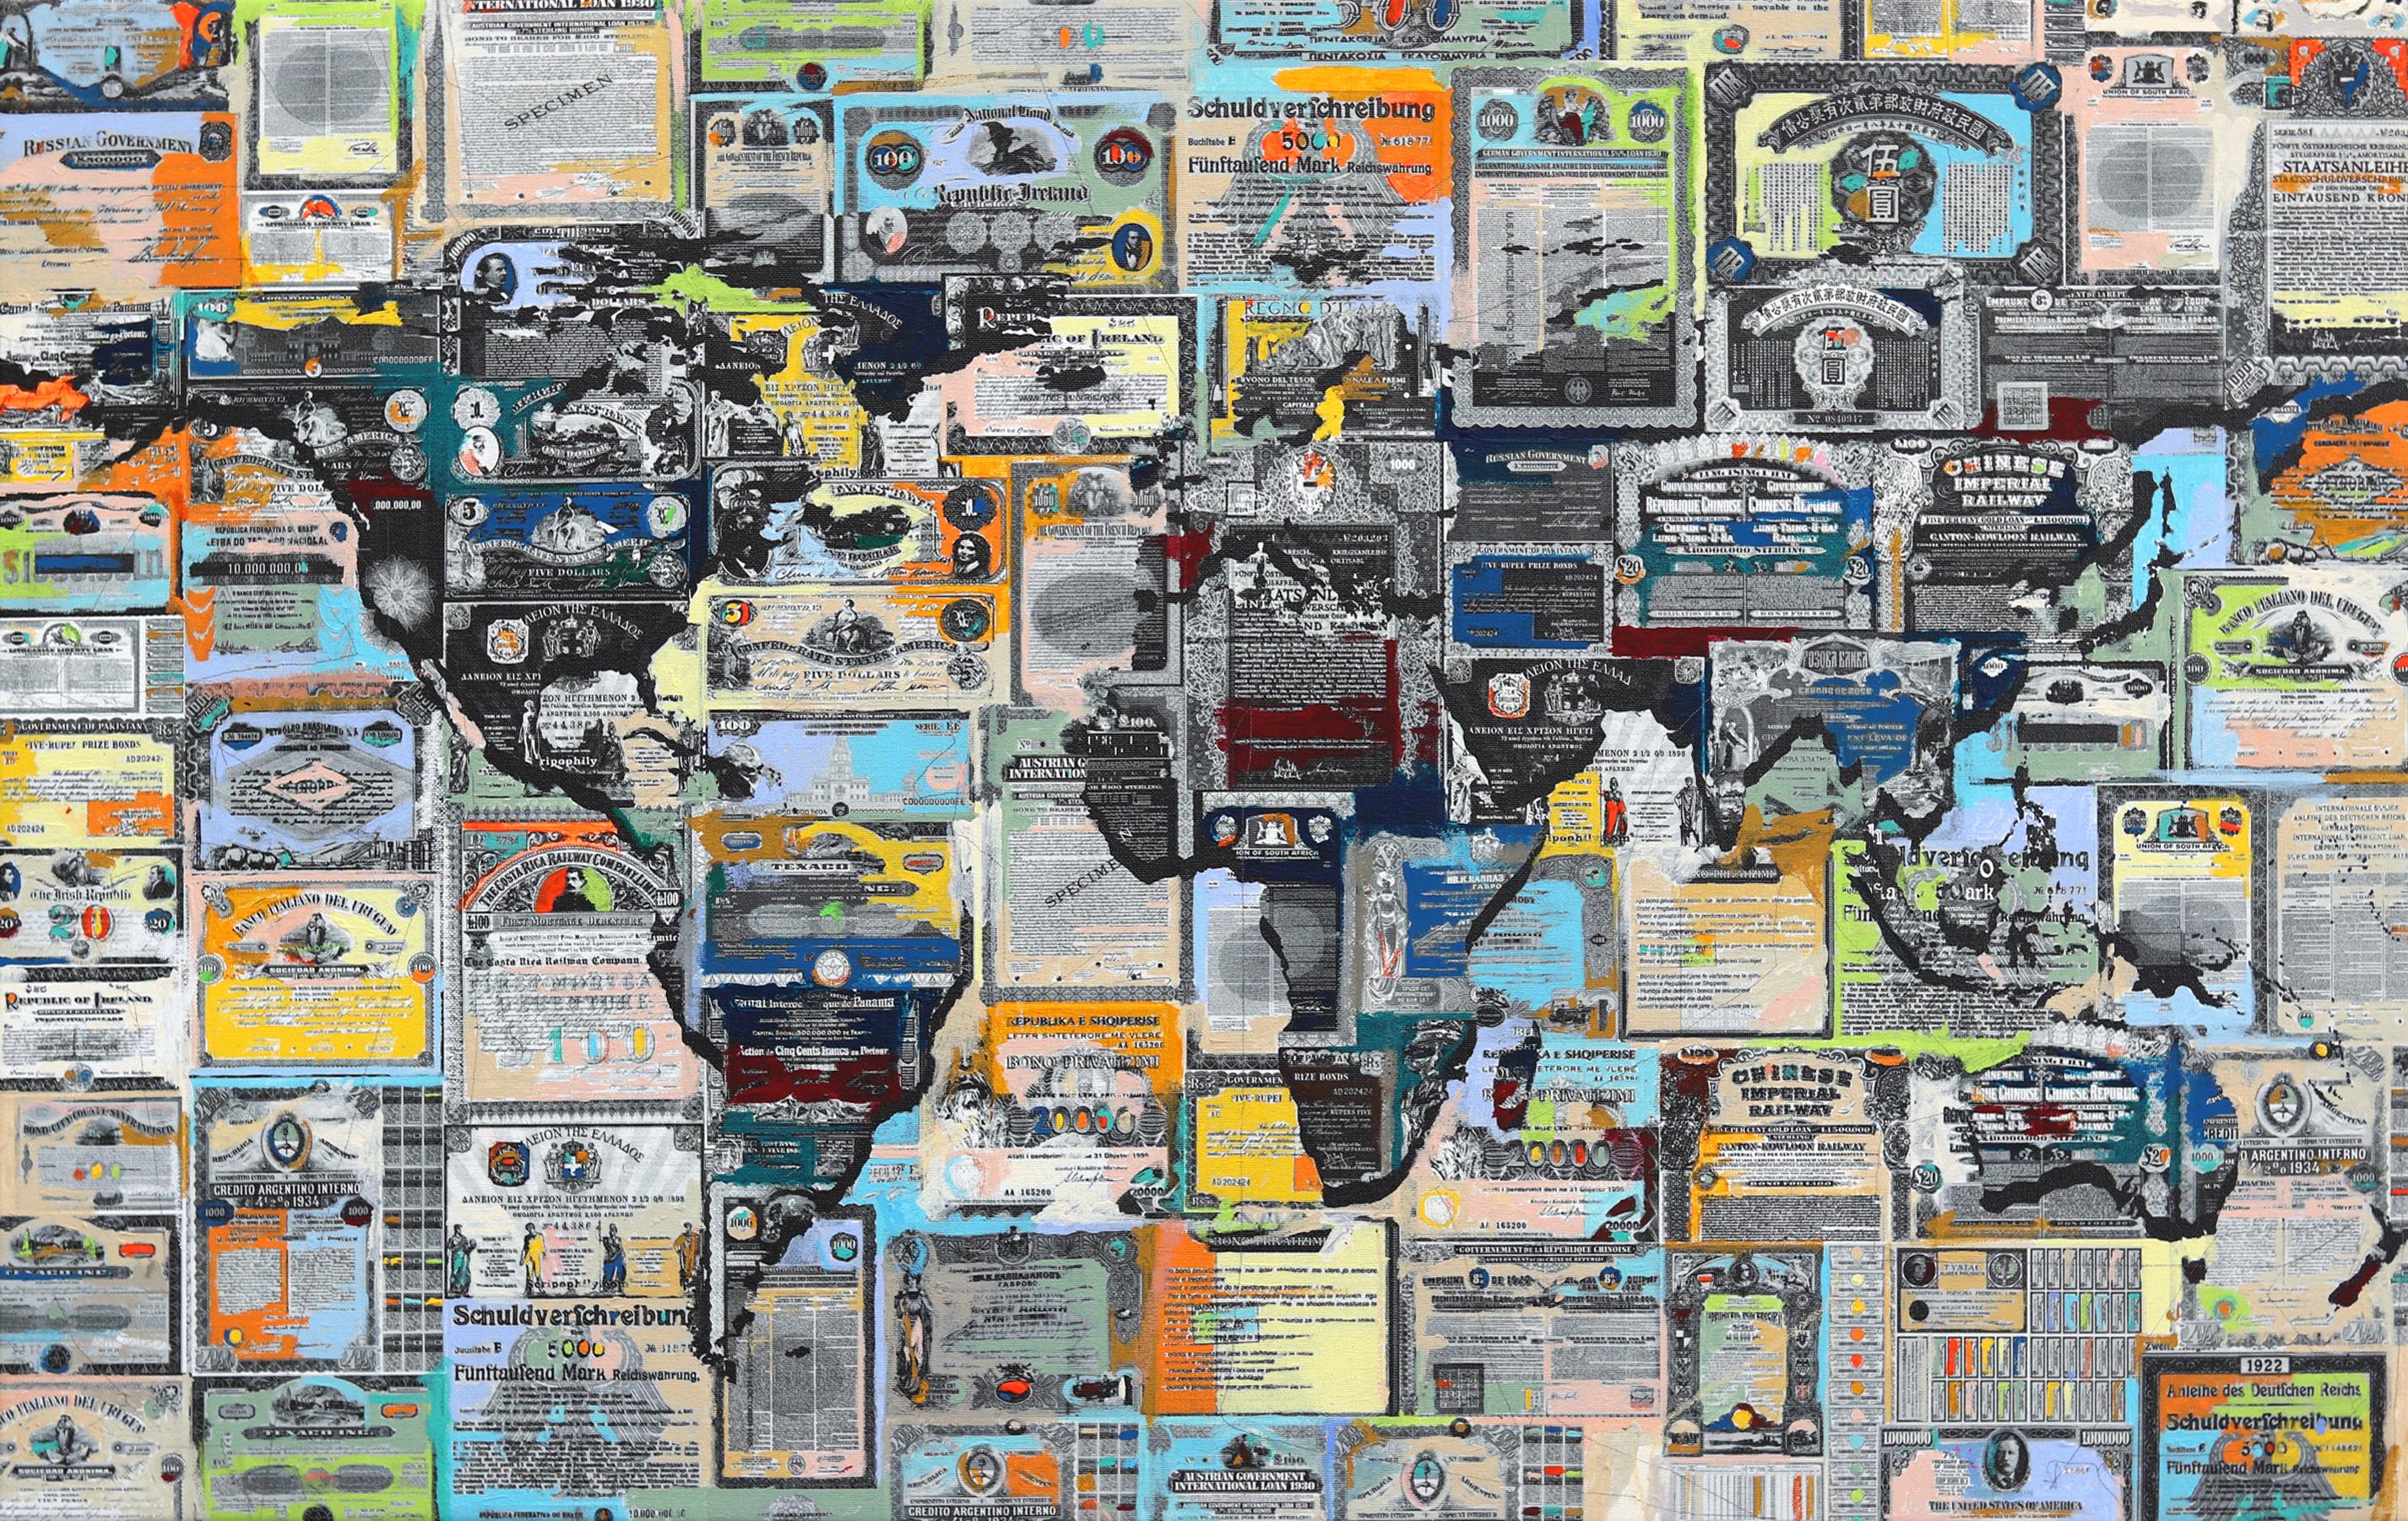 Geobond - Authentique carte urbaine colorée - peinture sur monnaie - Mixed Media Art de Fabio Coruzzi